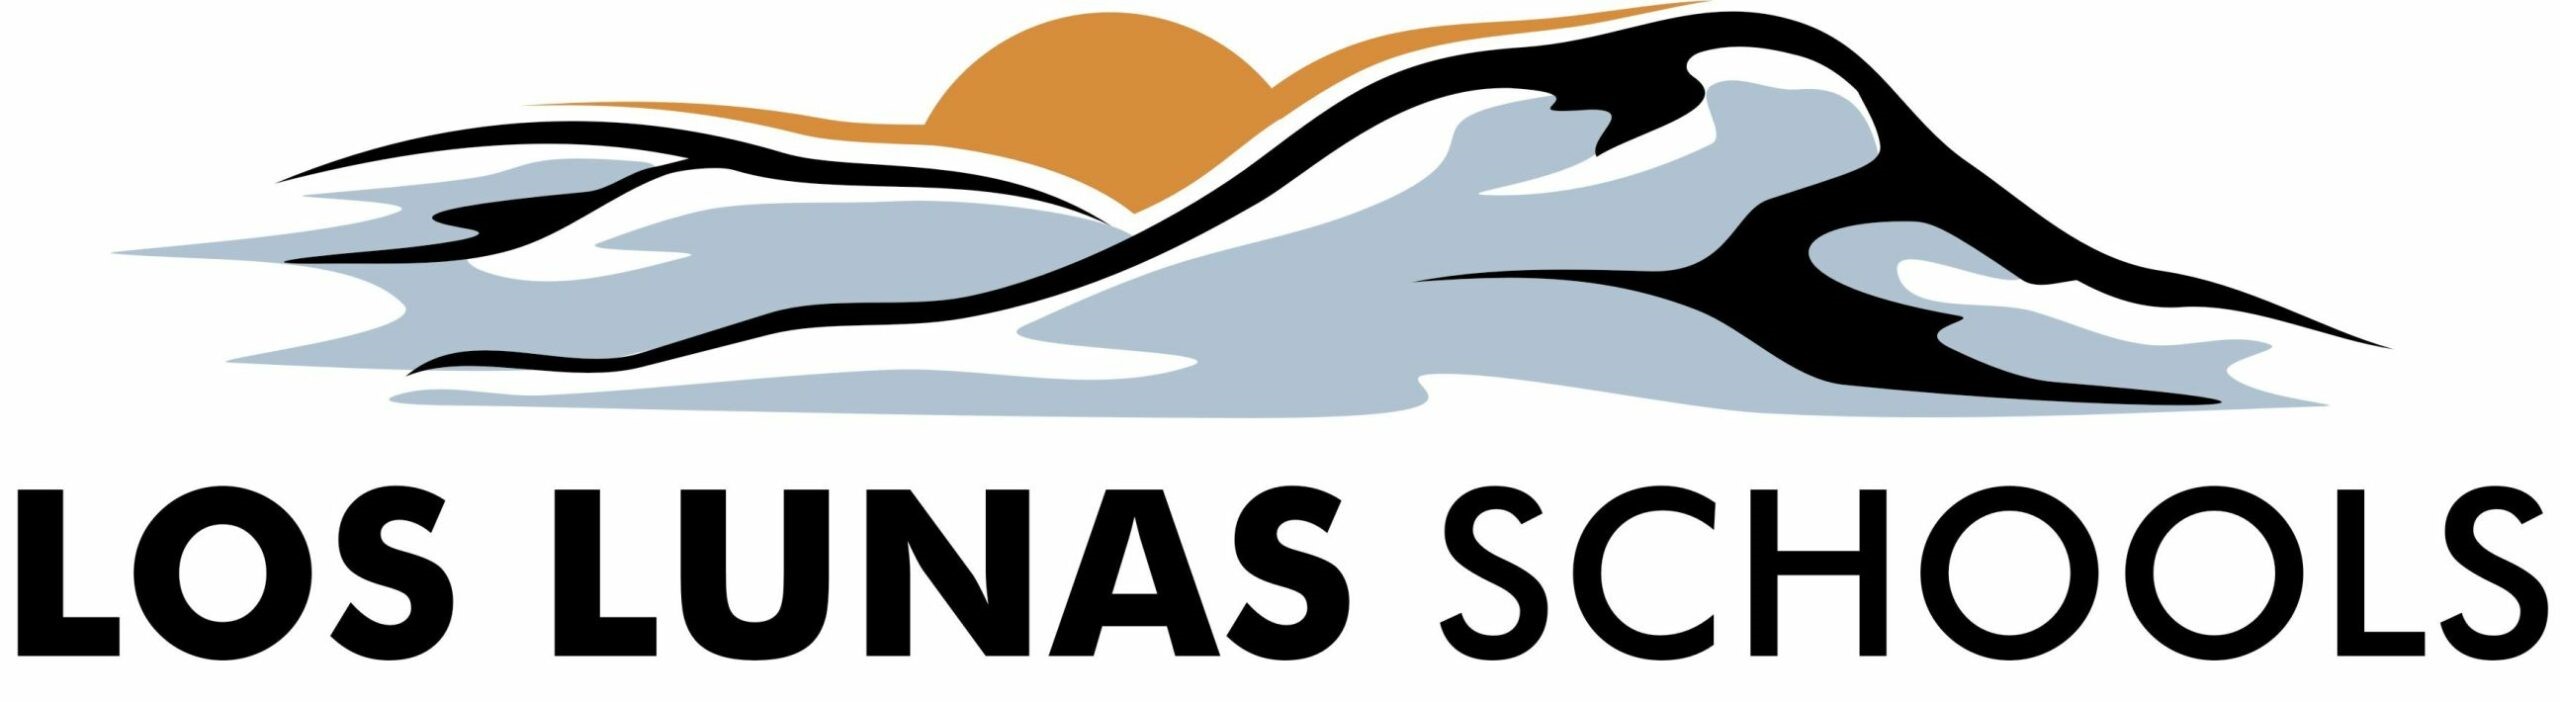 Los Lunas Schools logo